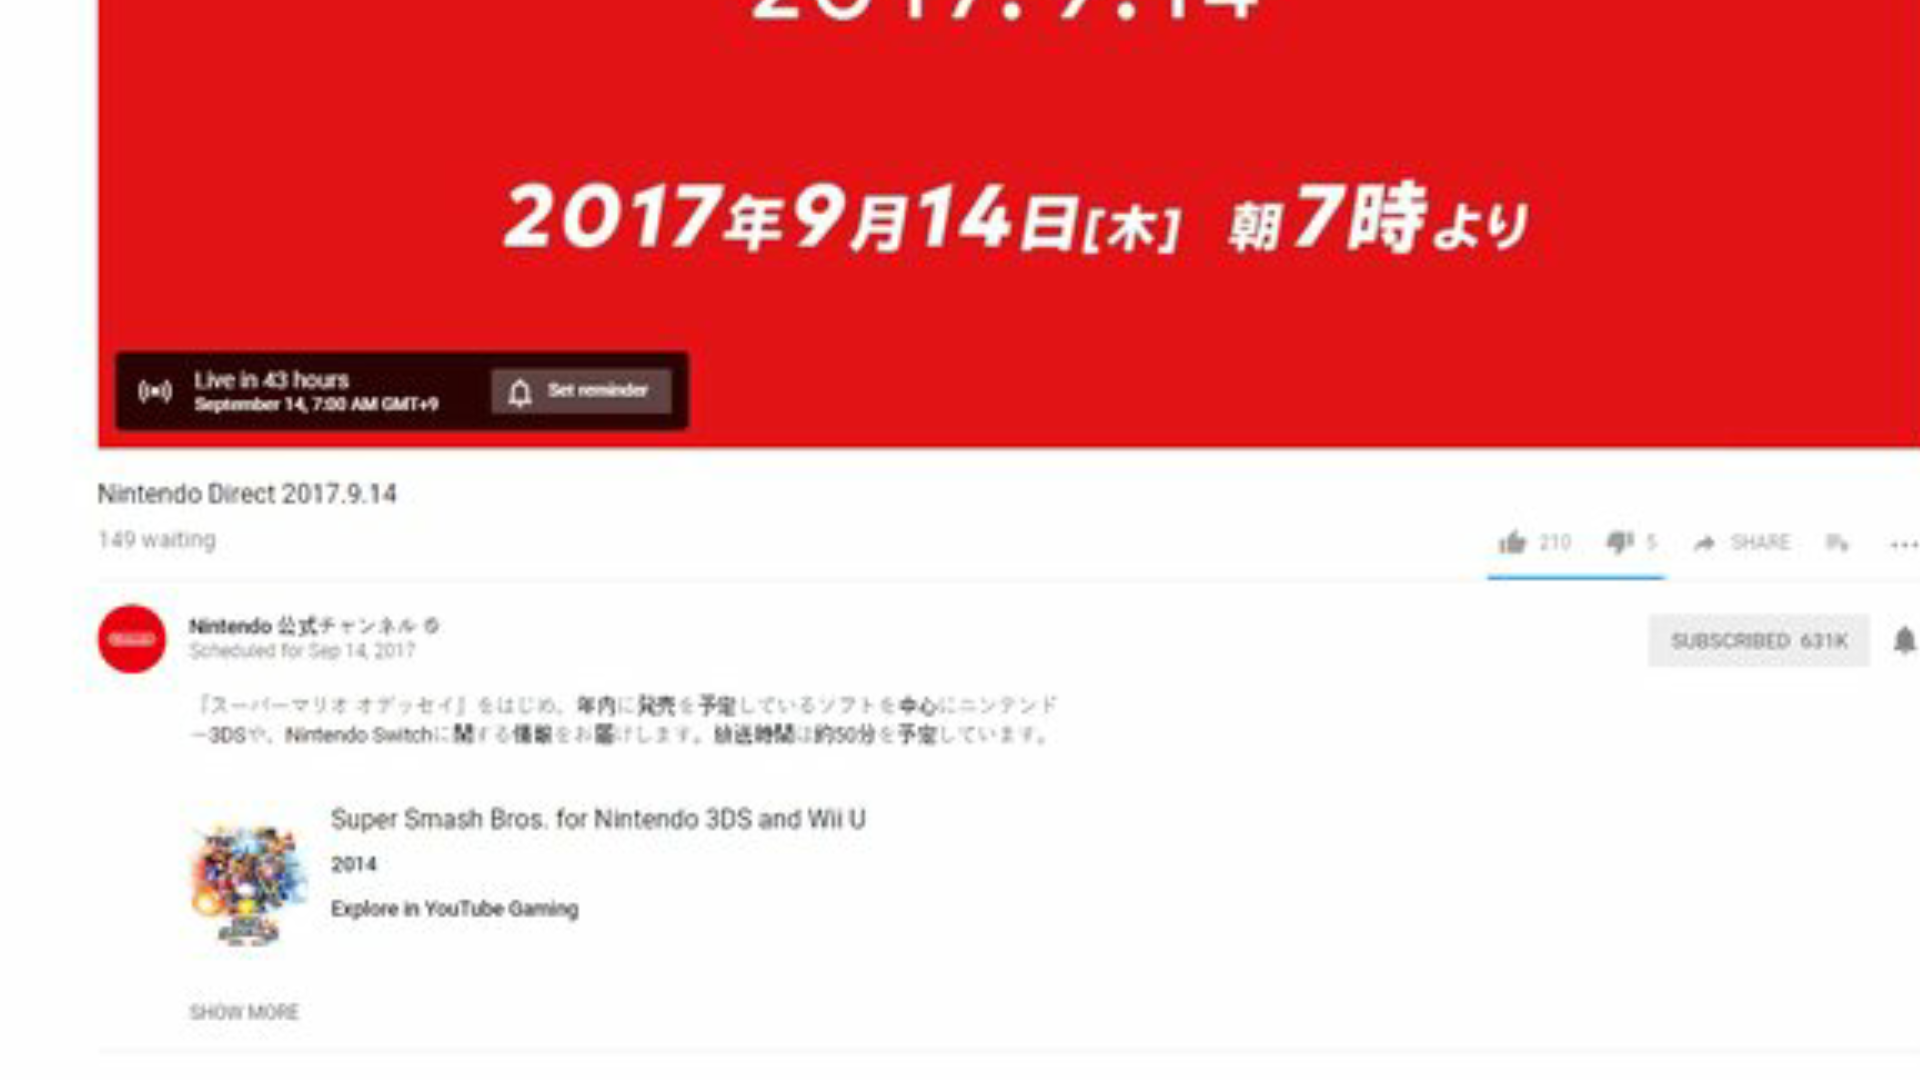 Super Smash Bros. aparece en las etiquetas del Nintendo Direct japonés